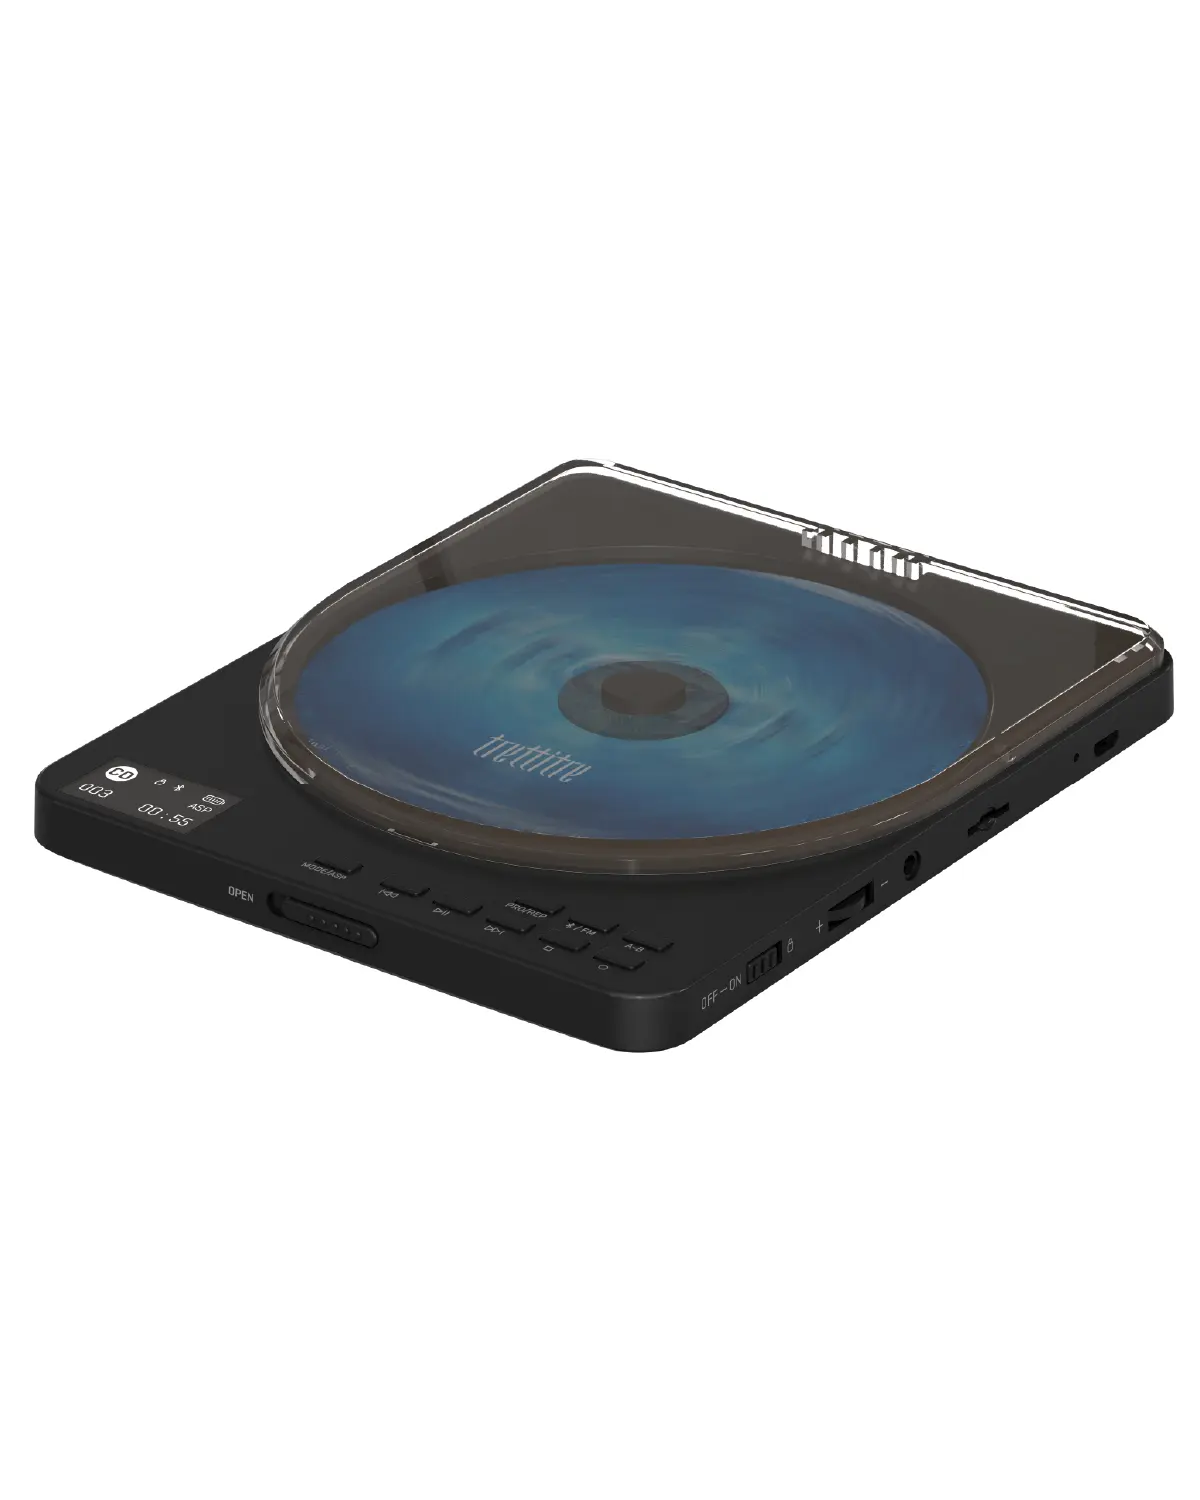 विंटेज वॉकमेन सीडी प्लेयर स्टीरियो रेडियो पोर्टेबल ऑडियो सीडी प्लेयर यूएसबी कनेक्शन के साथ सीडी प्लेयर और रेडियो